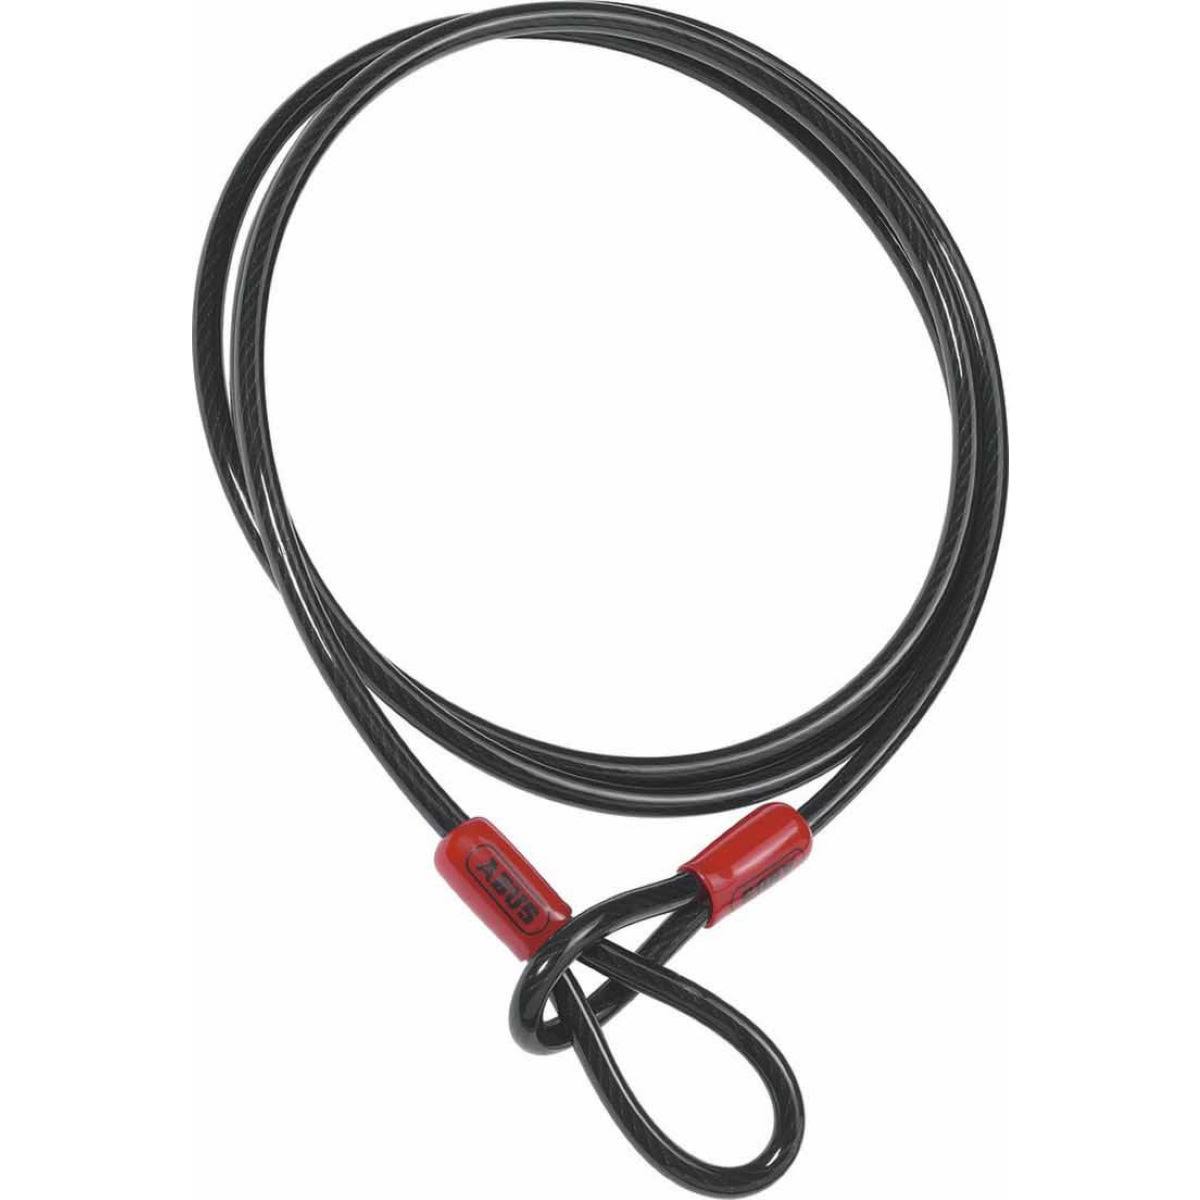 Abus Cobra Cable - Black, 75cm